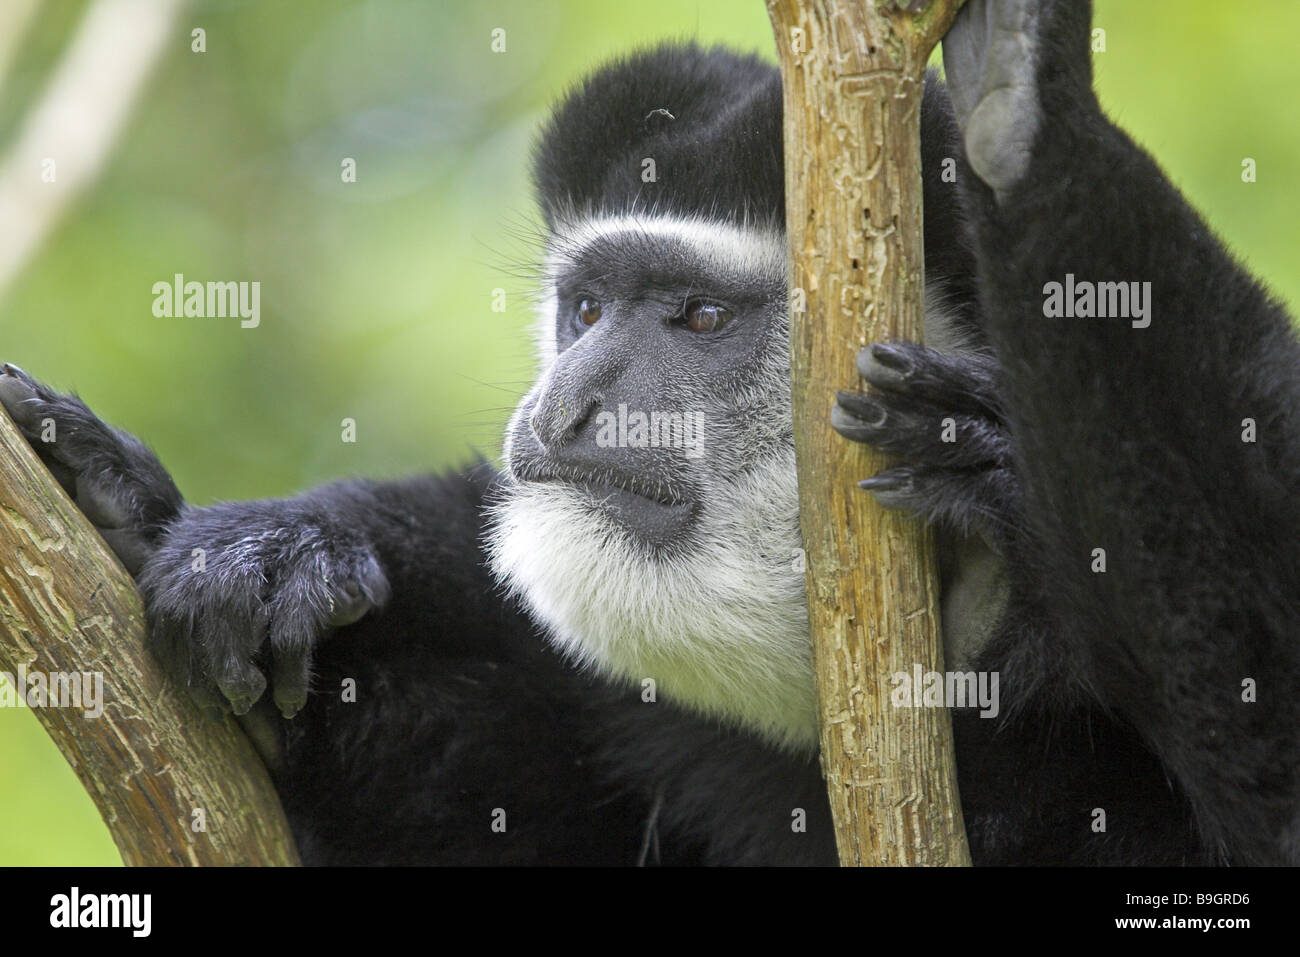 Colo-bus Zoo Guerza guereza portrait jeu-vigilance de la faune animal animaux mammifères alto-world-slim-singe monkey Banque D'Images